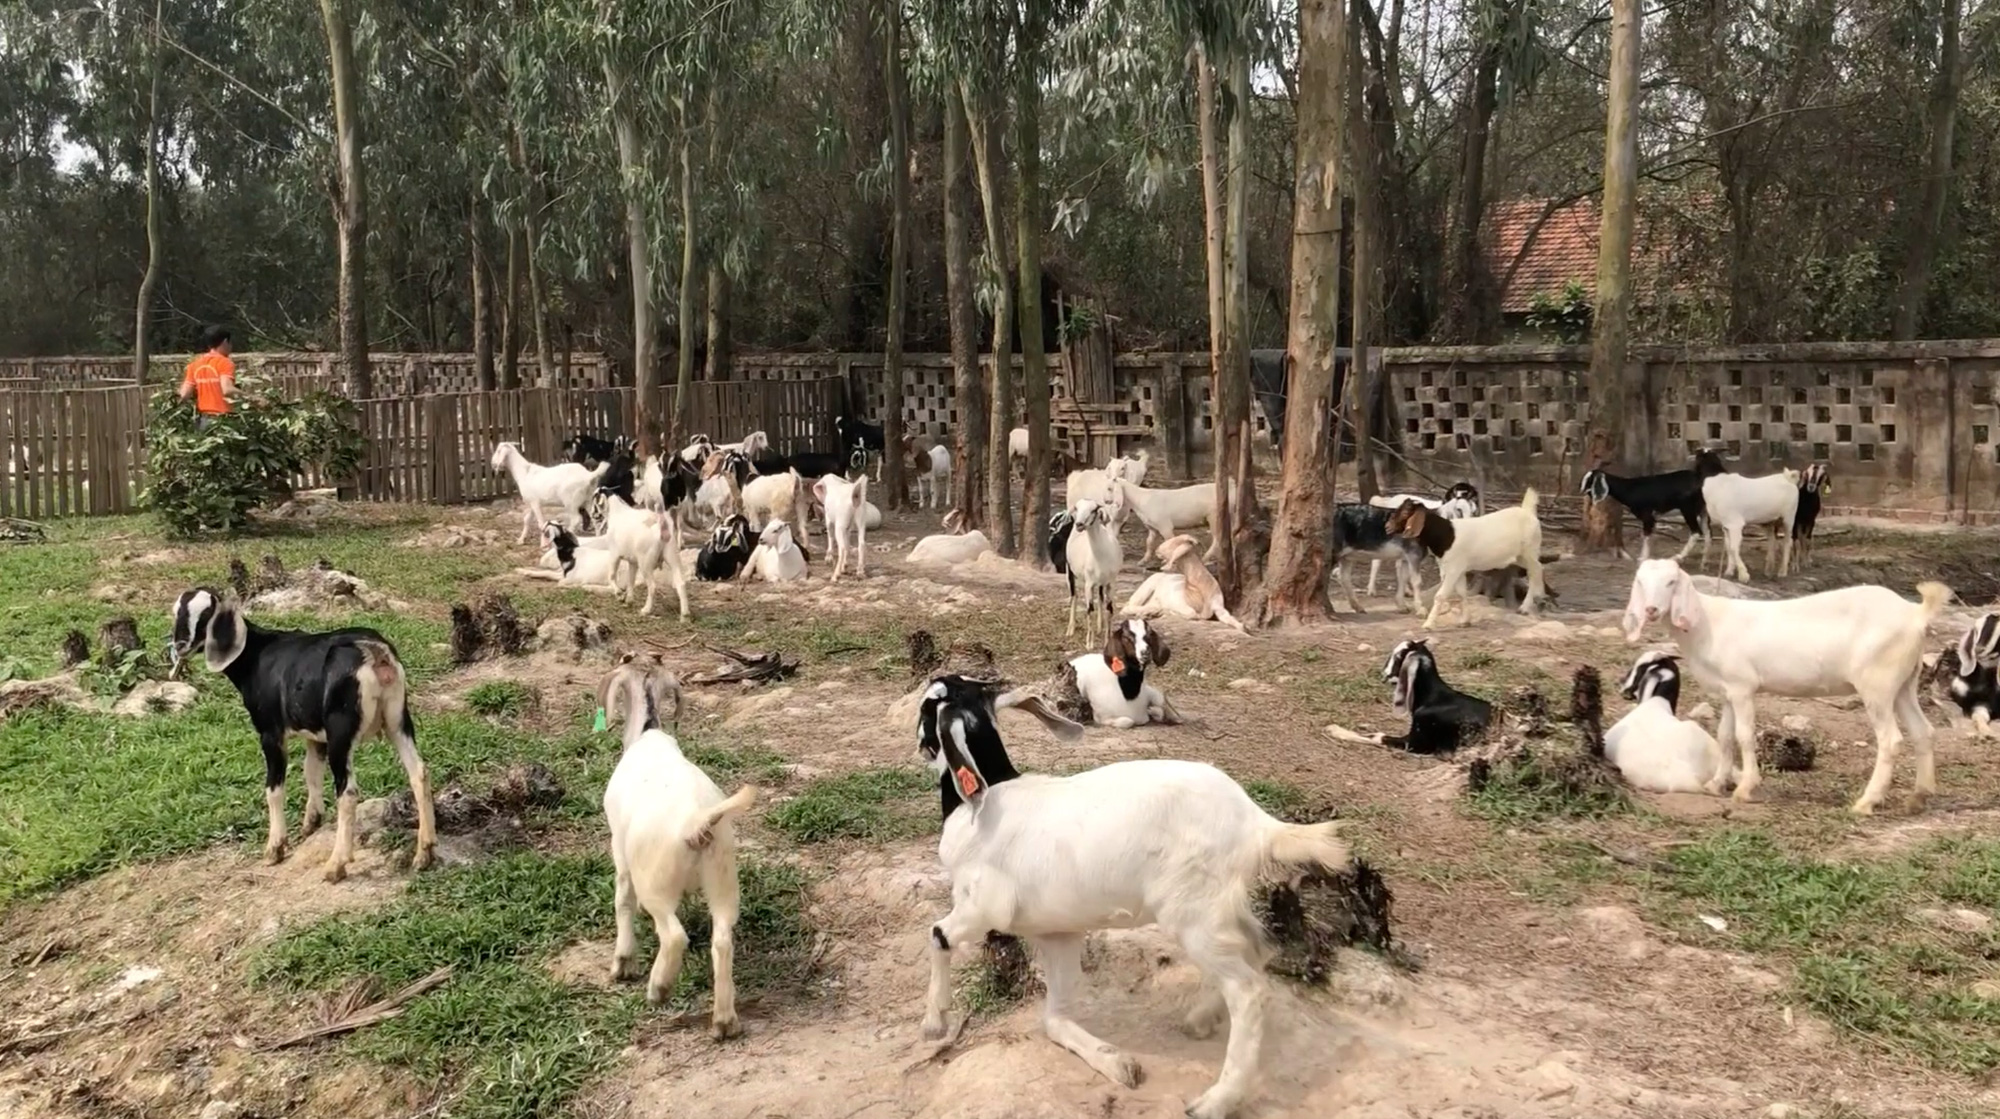 Trang trại nuôi dê ngoại nhiều nhất rộng tới 15ha ở Hà Nội có gì đặc biệt   Trang Trại Dê DTH FARM